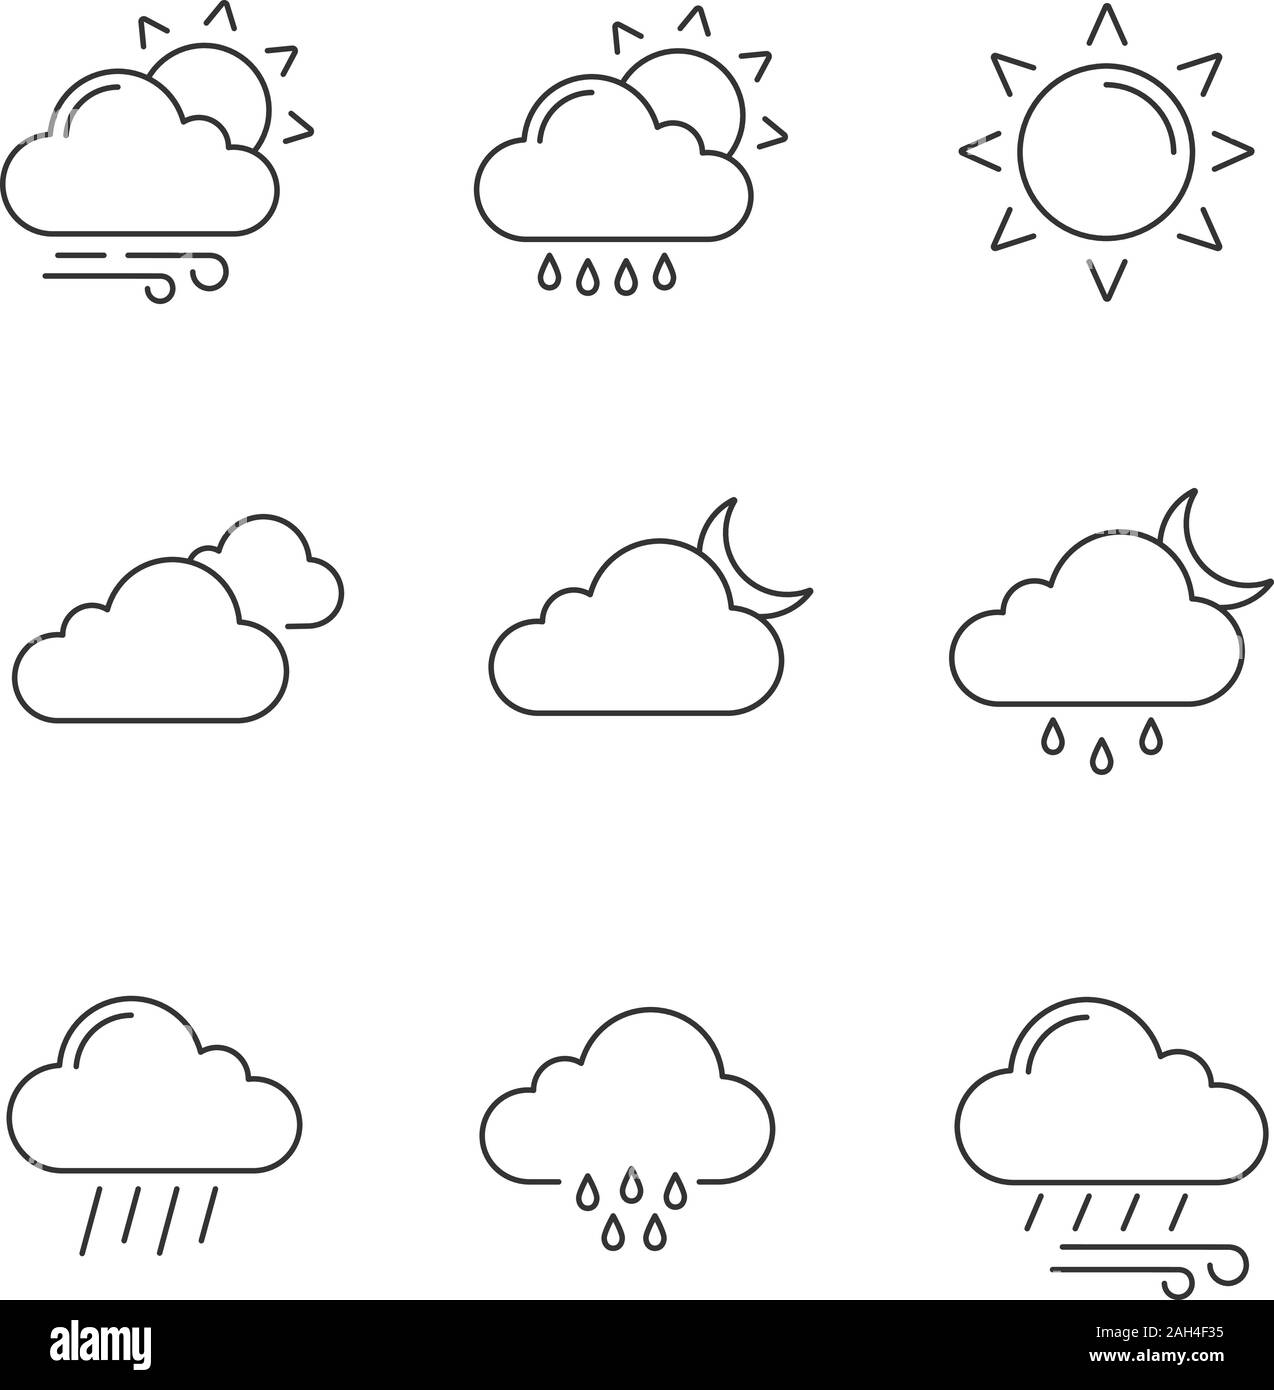 Prévisions météo icons set linéaire. Partiellement nuageux et venteux, la  bruine pluie, soleil, nuages, nuit, vent, ciel couvert, pluvieux la nuit.  Les vecteur isolé Image Vectorielle Stock - Alamy